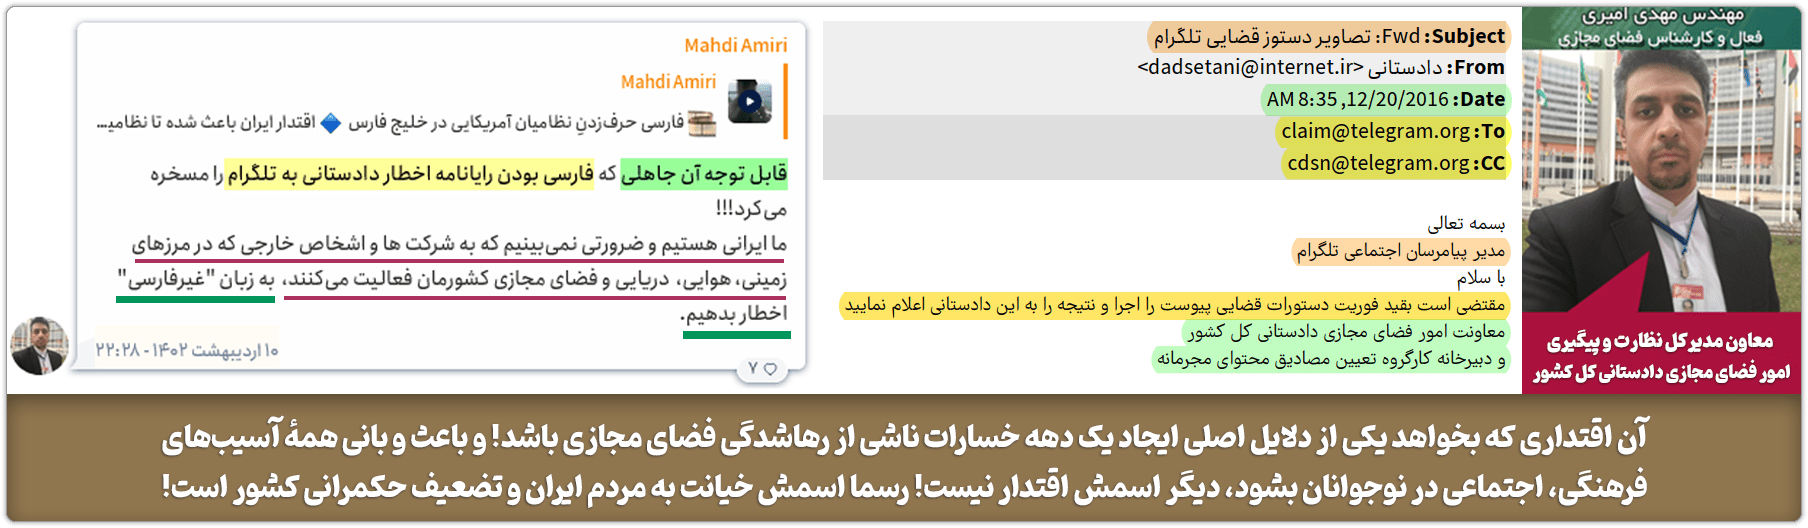 Amiri Telegram request02